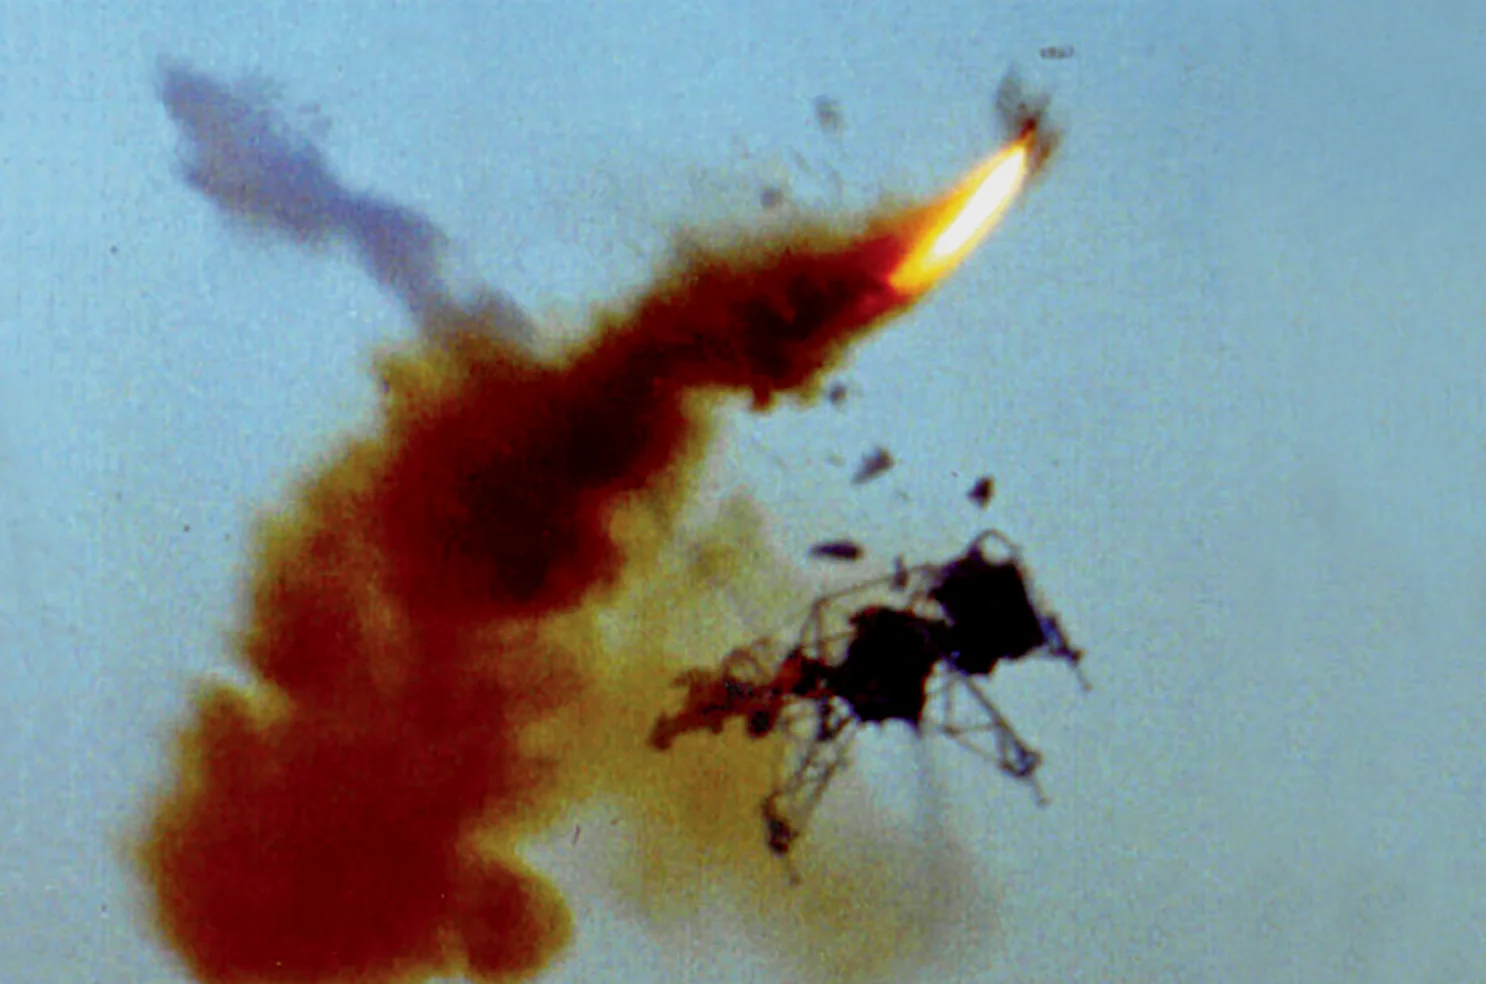 阿姆斯特朗遭遇的飞行训练事故，他从飞行器上成功弹射逃生